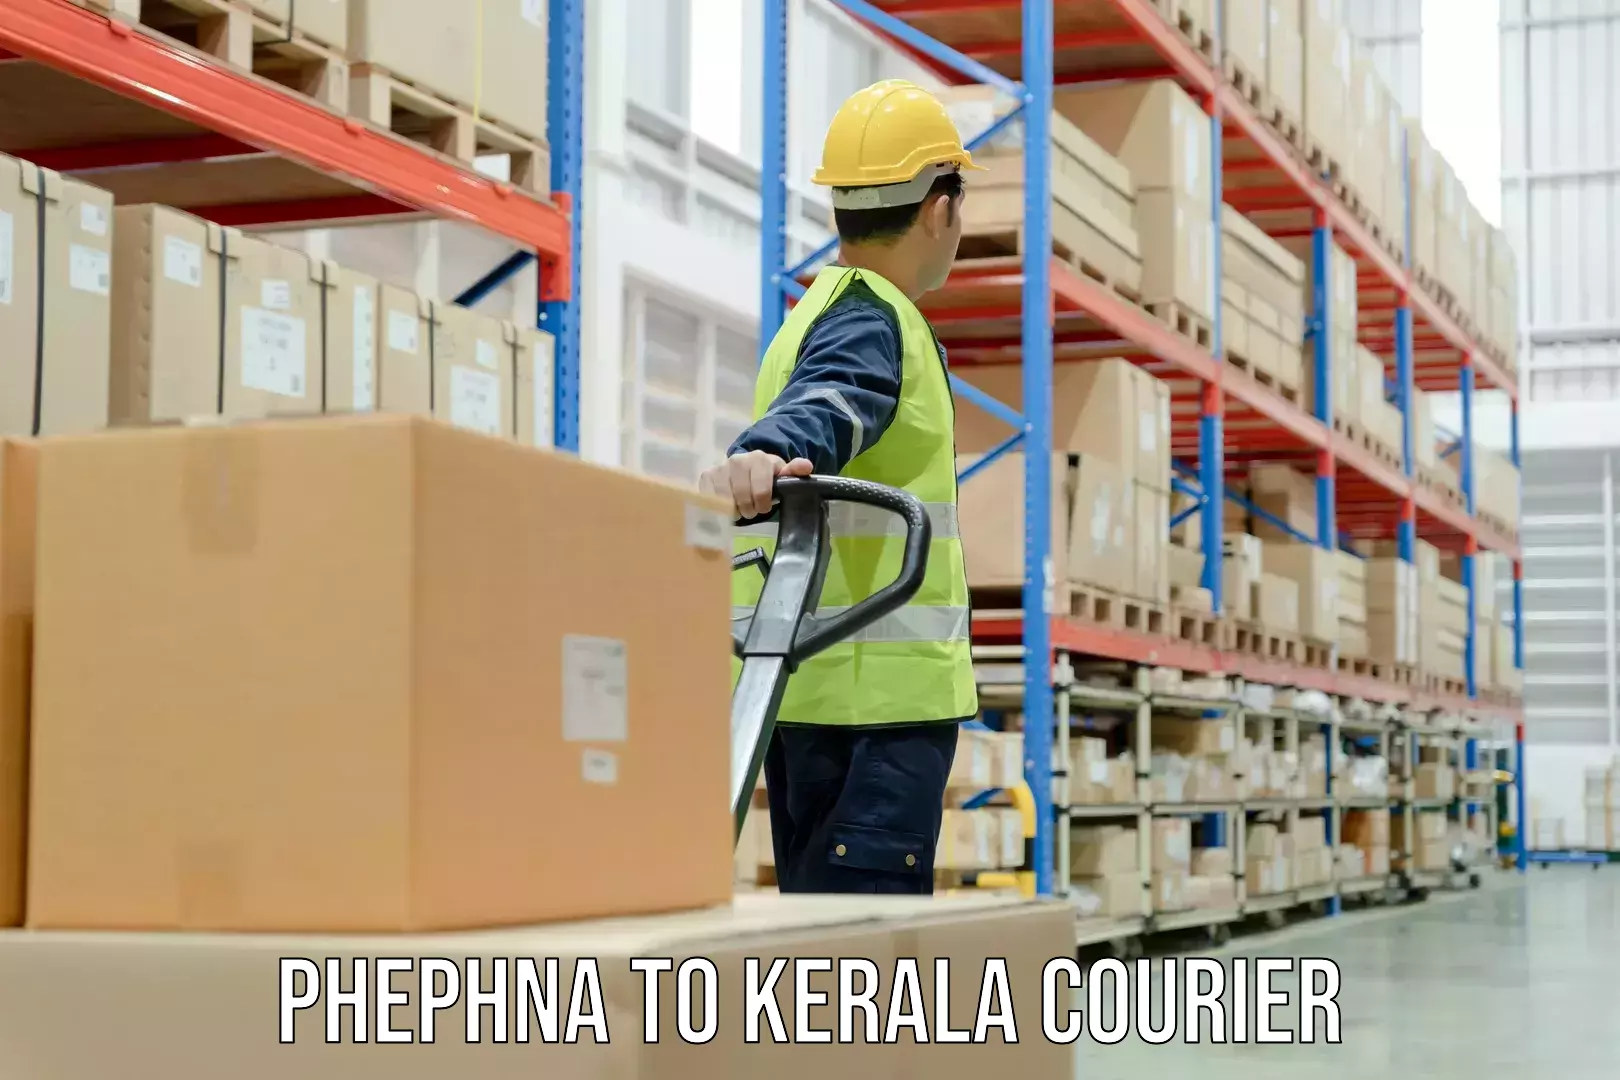 Versatile courier options Phephna to IIIT Kottayam